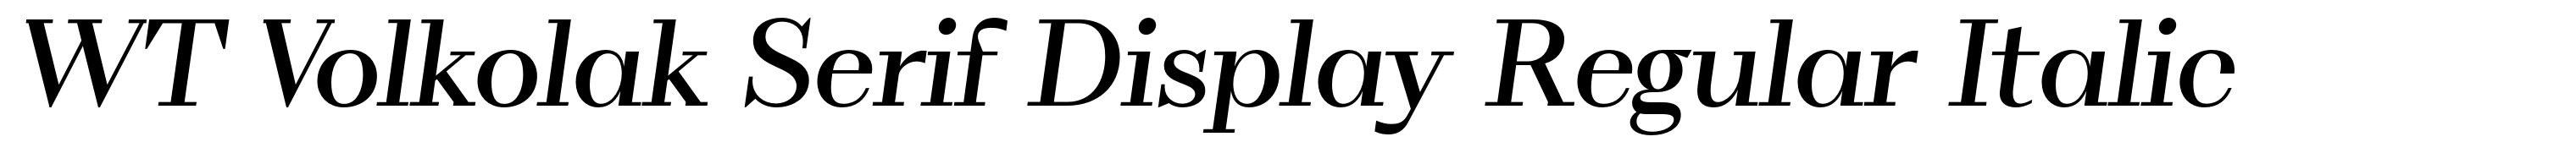 WT Volkolak Serif Display Regular Italic